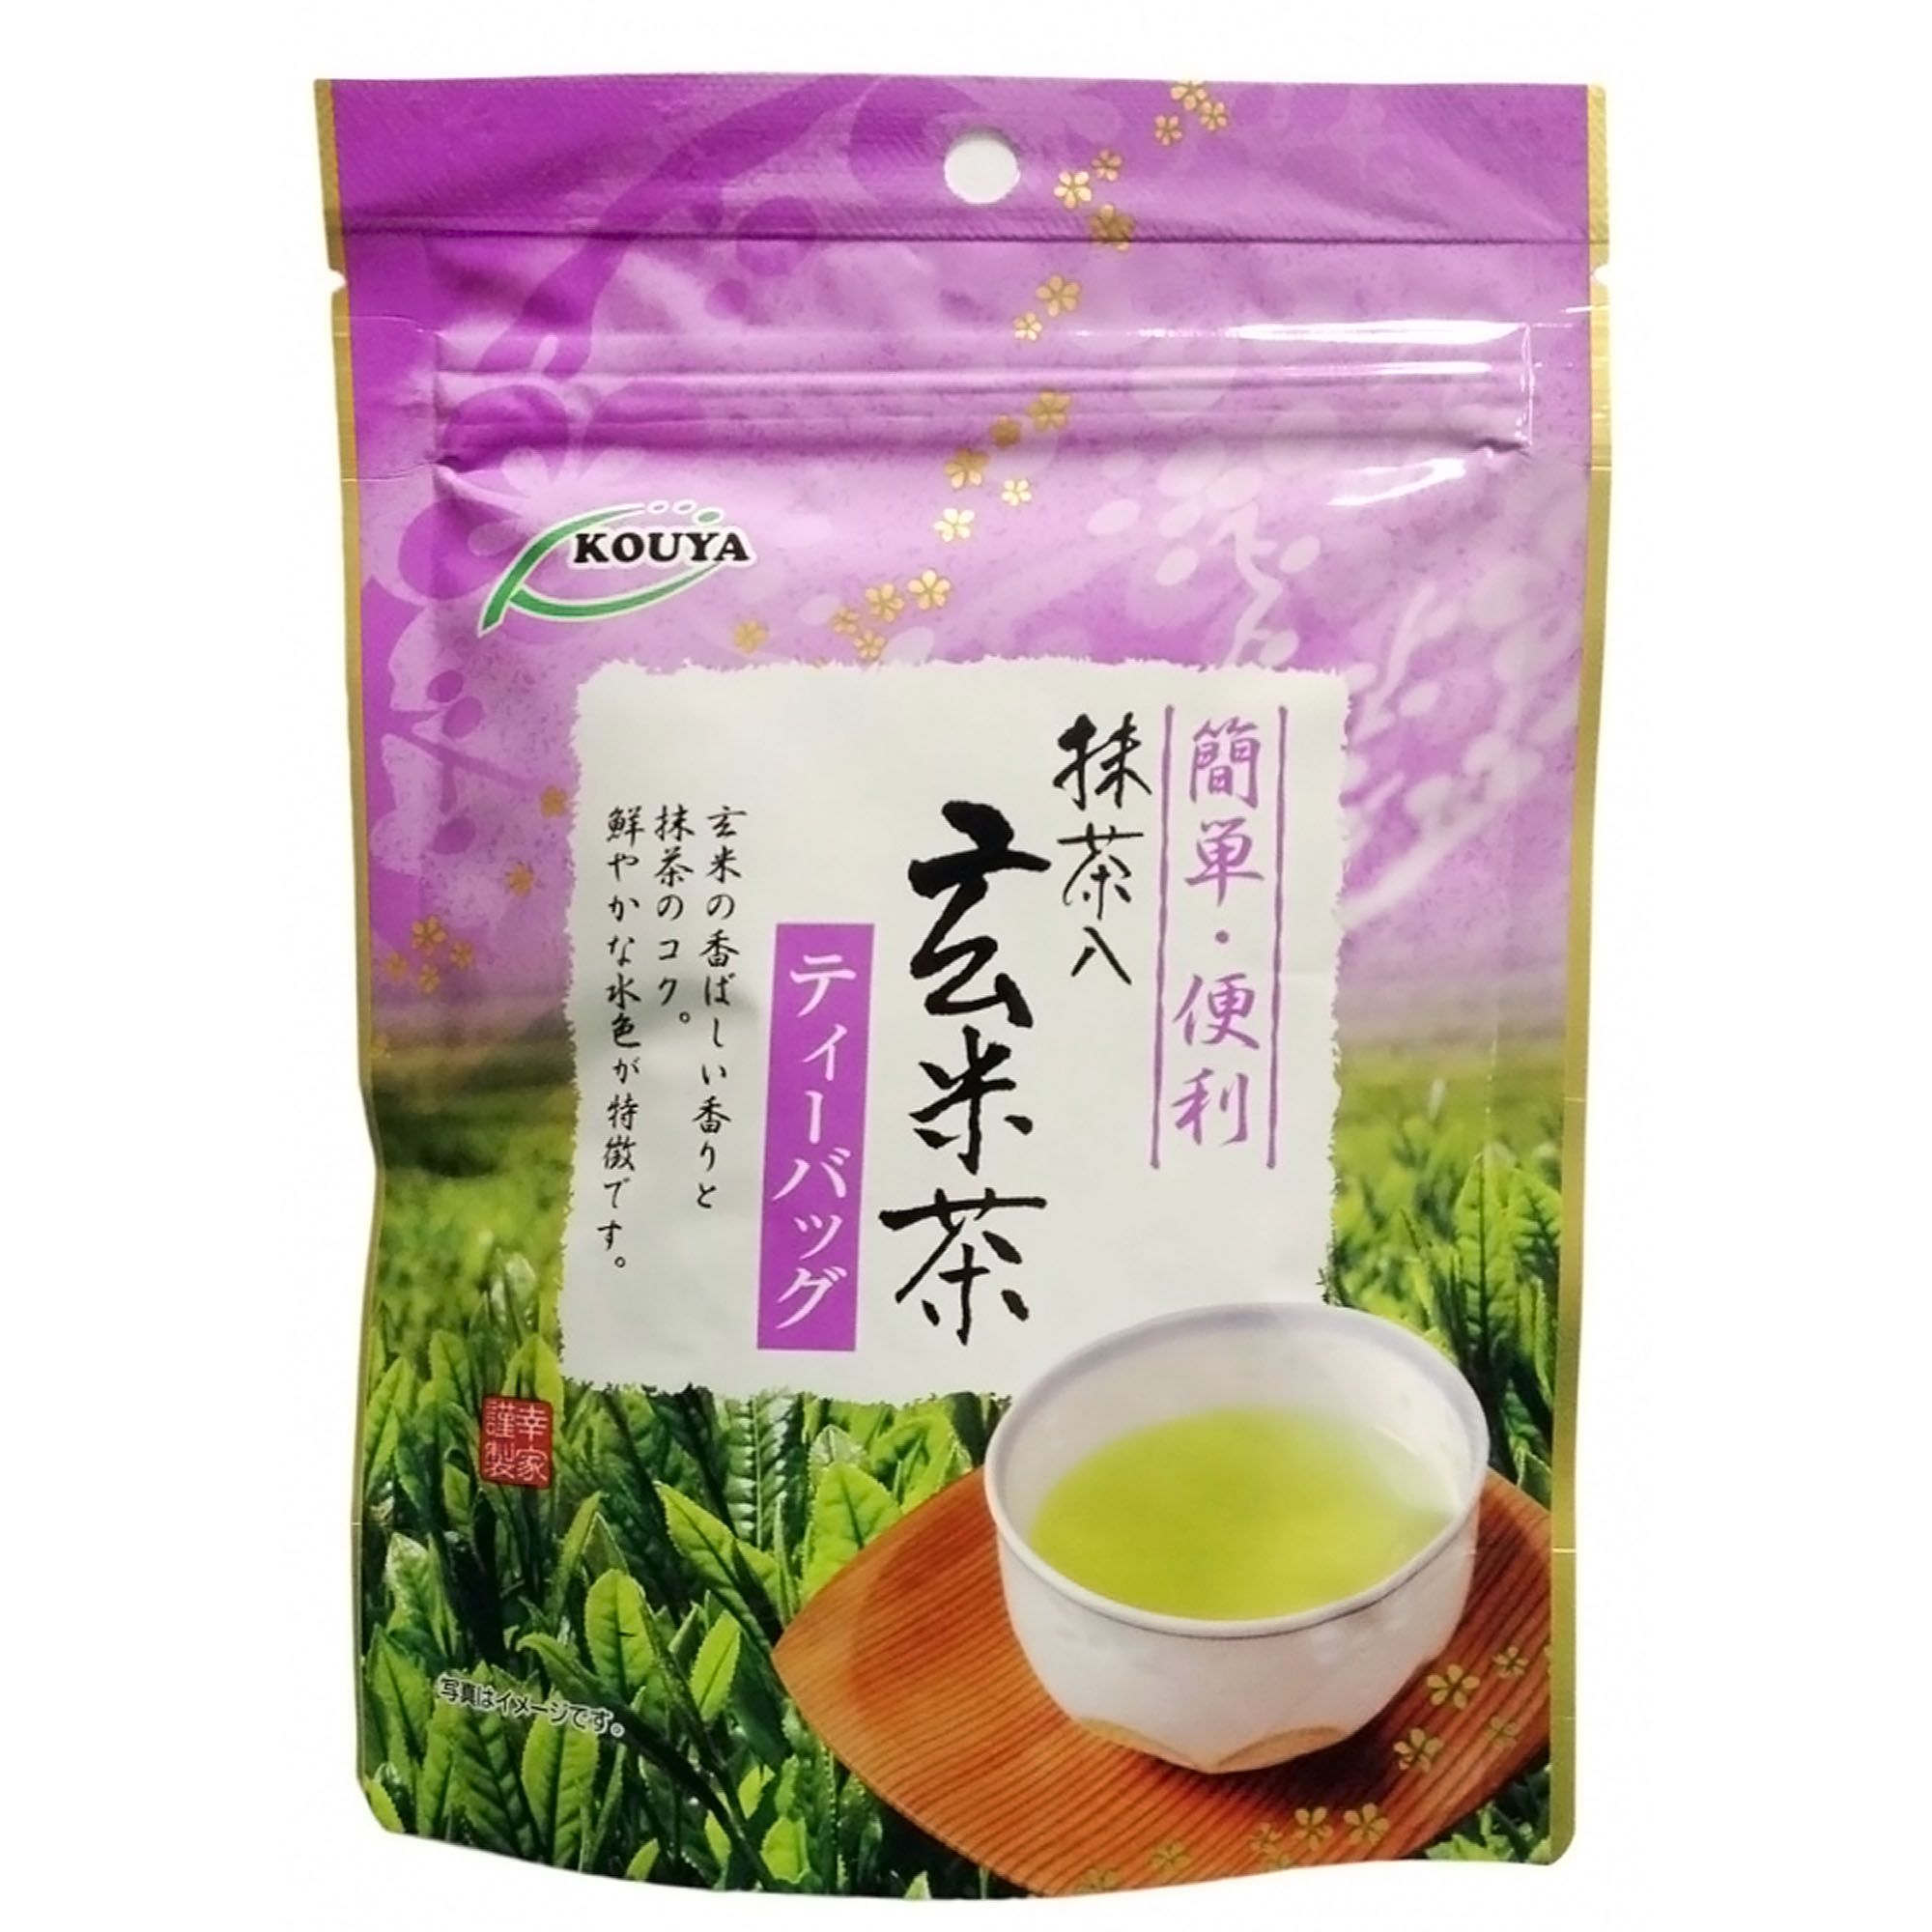 Японский чай Kouya Геммай-ча (15 шт), 30 г чай травяной подари чай витаминный ягодный листовой 200 г